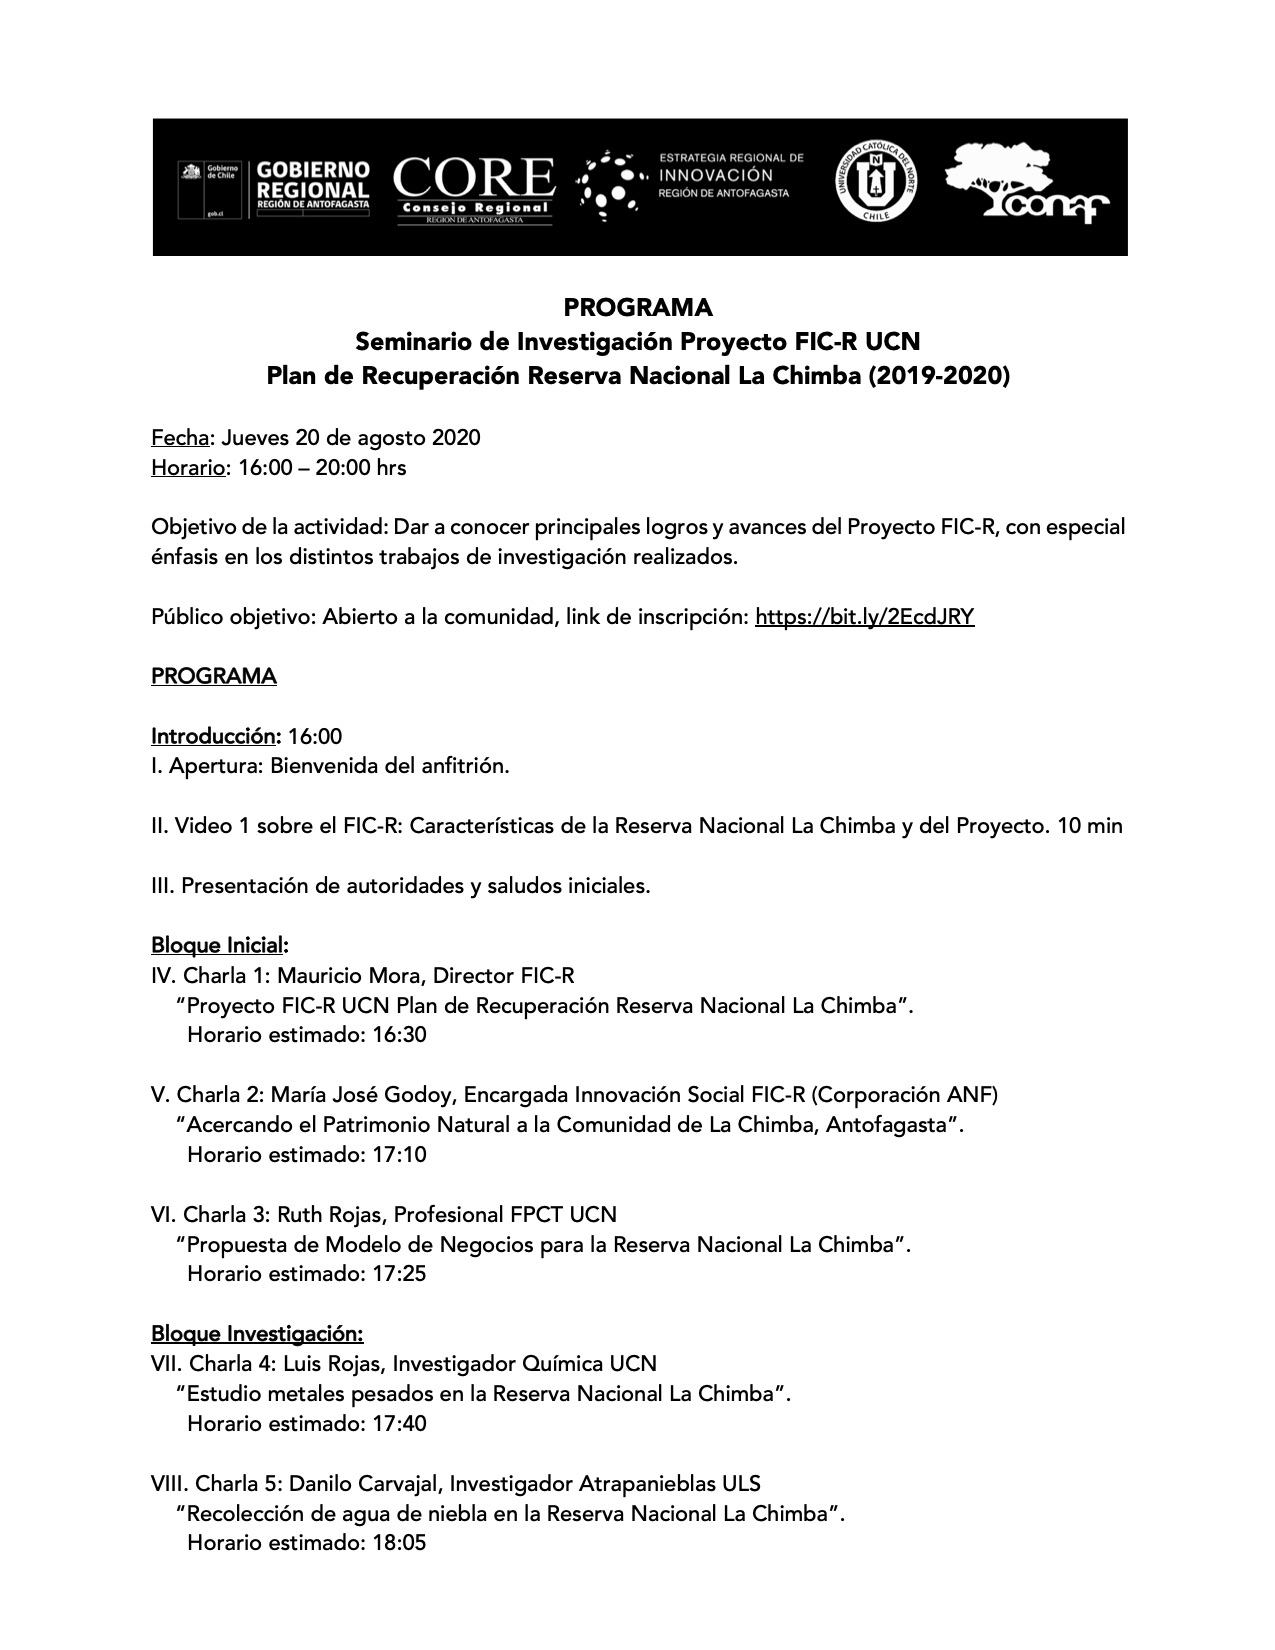 [Jueves 4PM] Seminario de Investigación Proyecto FIC-R UCN Plan de Recuperación RN La Chimba